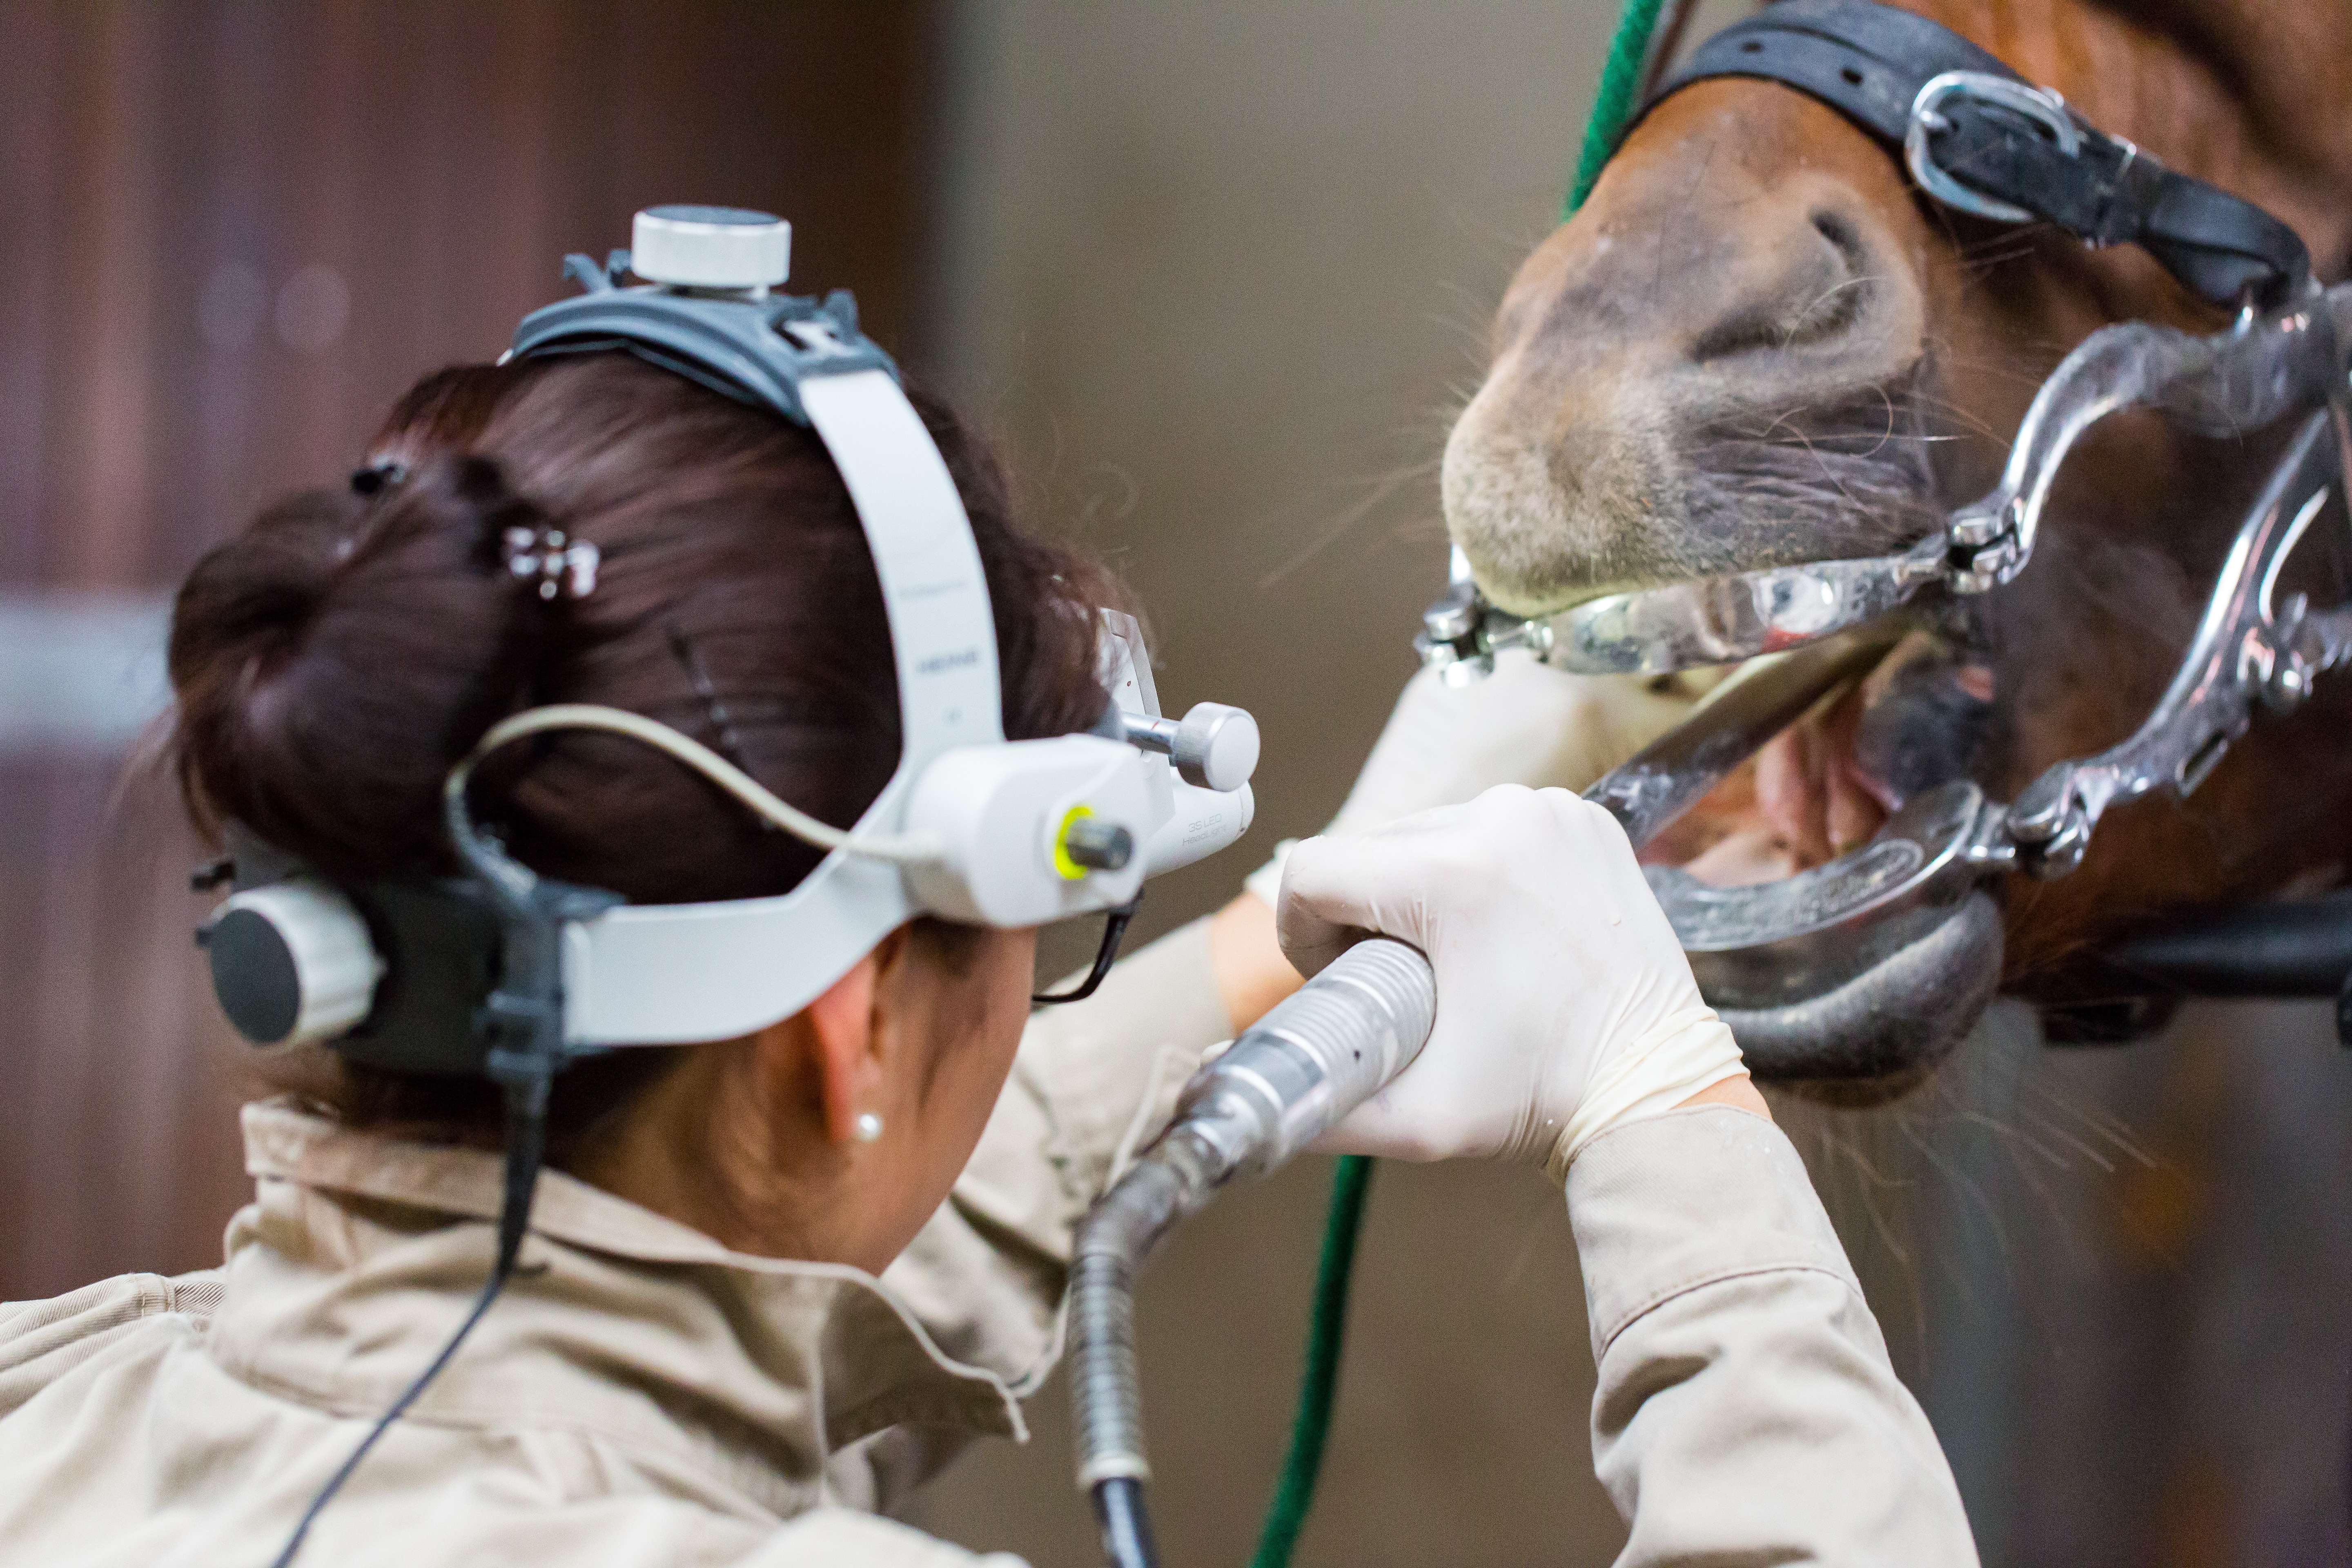 horse teeth cleaning tool free image | Peakpx